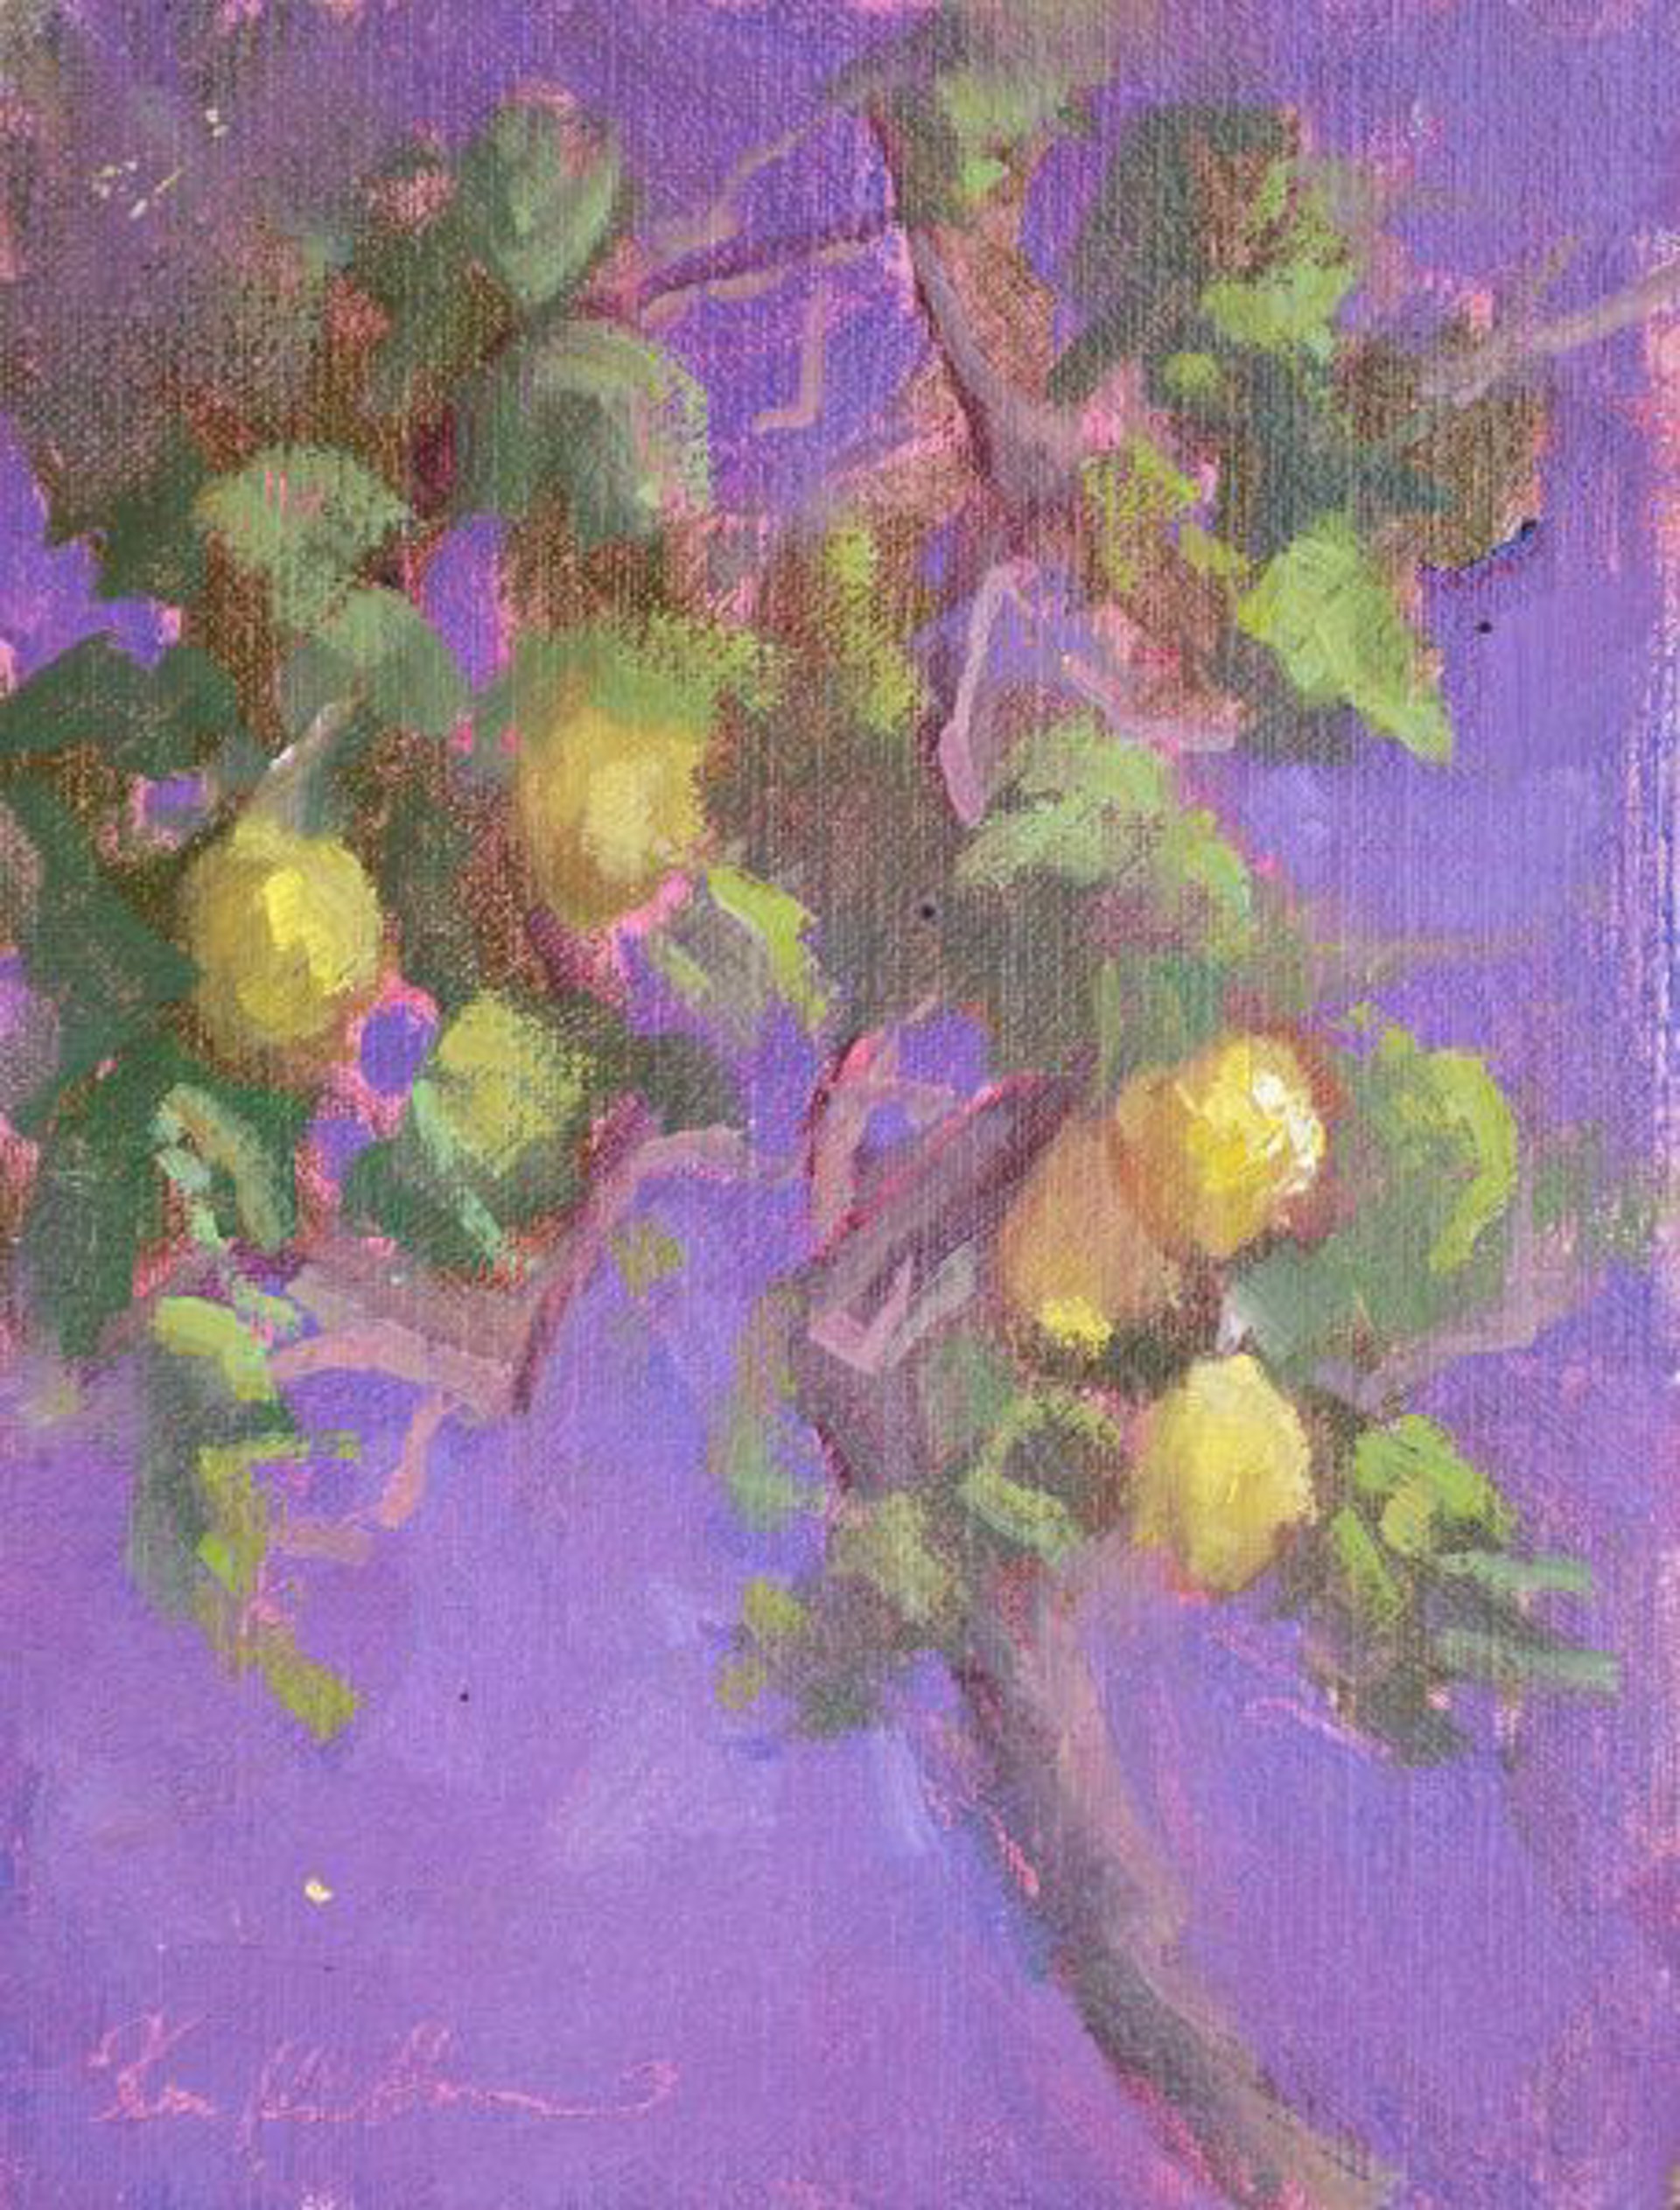 Lemon Trees II at La Consuma by Karen Hewitt Hagan